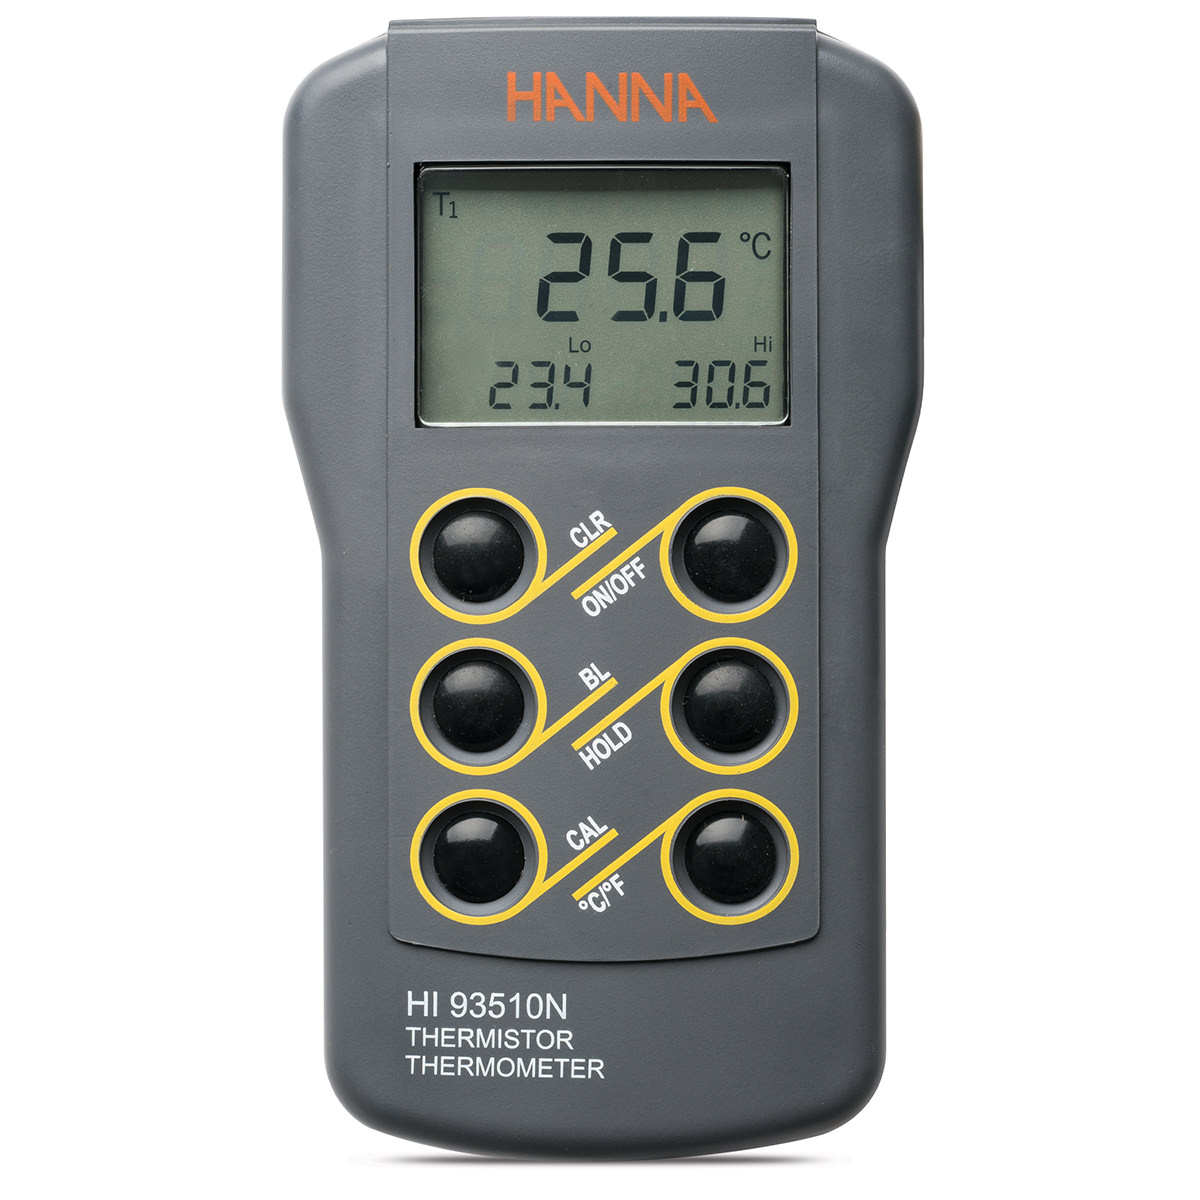 HI93510N Waterproof Thermistor Thermometer